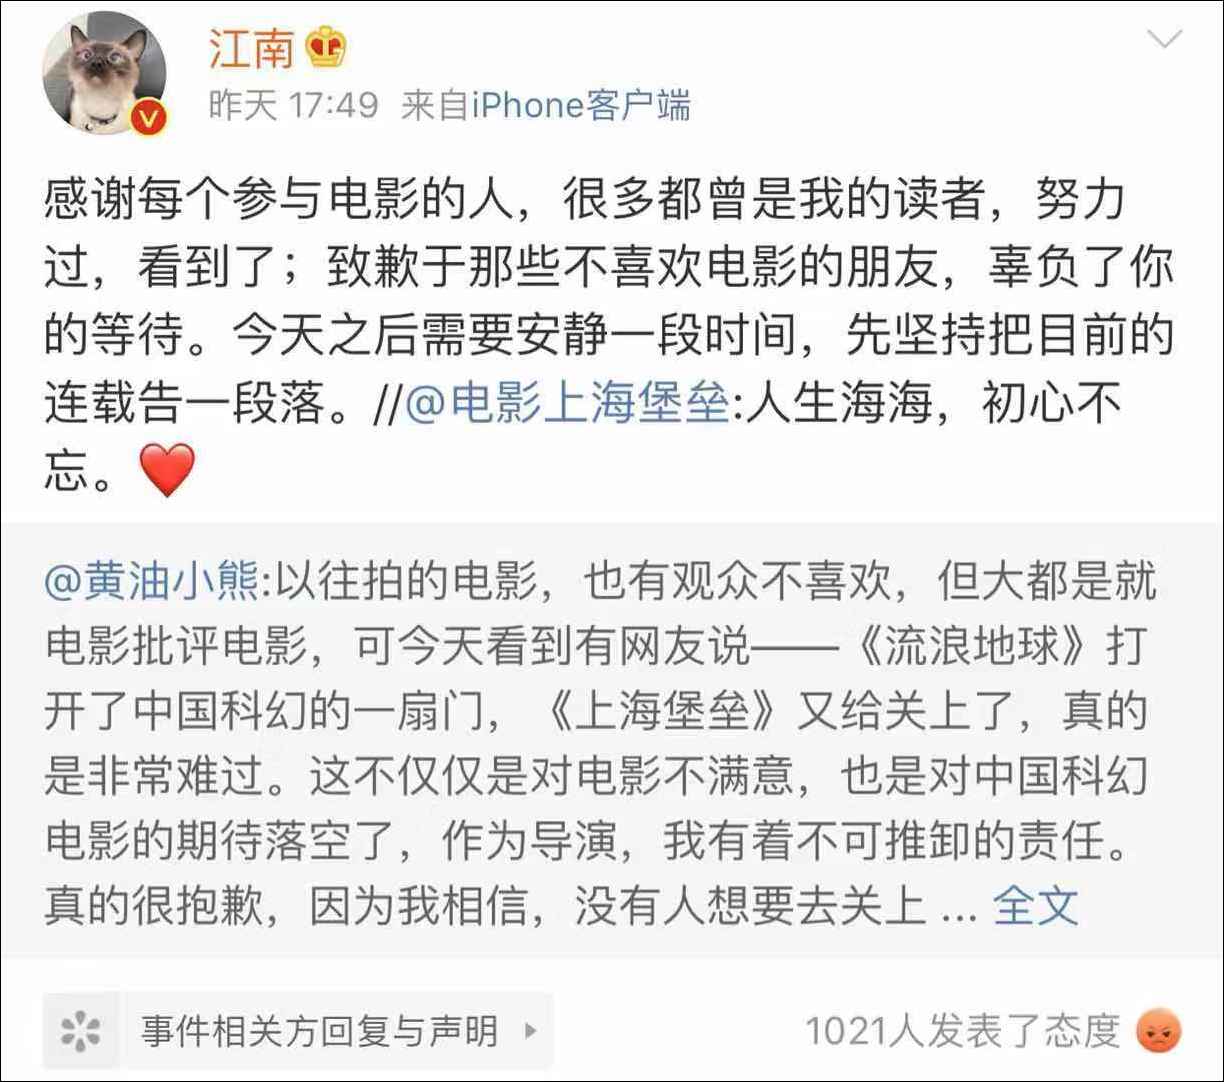 上海堡垒作者致歉 感谢所有的鼓励和批评